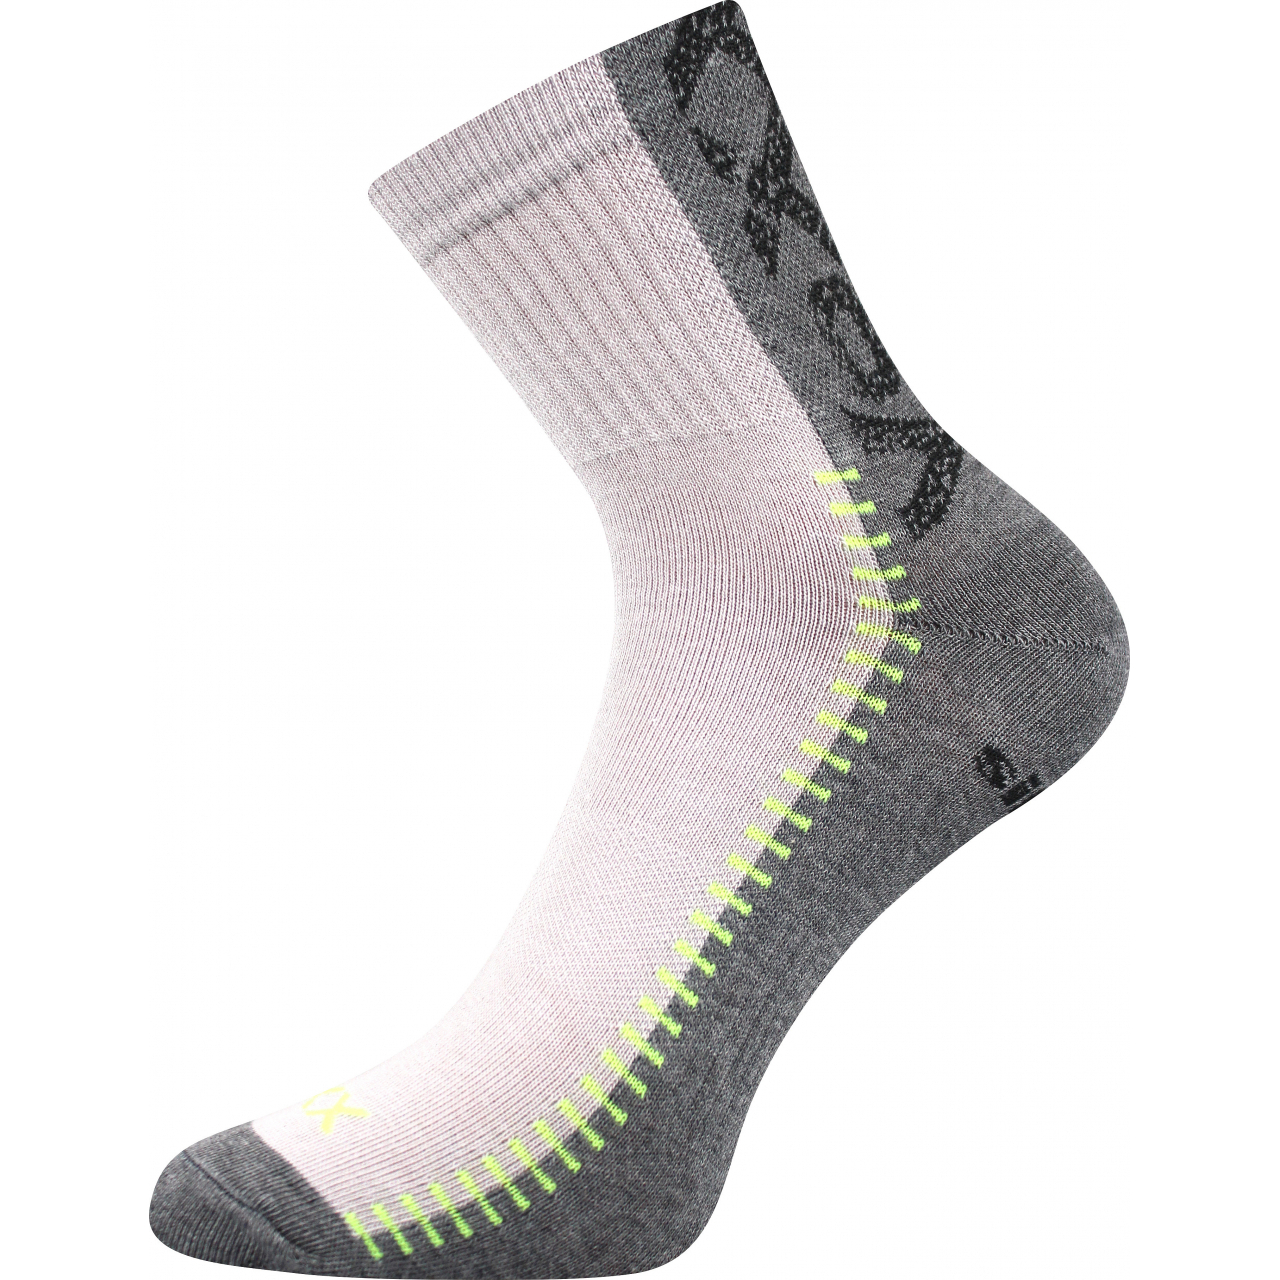 Ponožky sportovní Voxx Revolt - světle šedé-šedé, 47-50